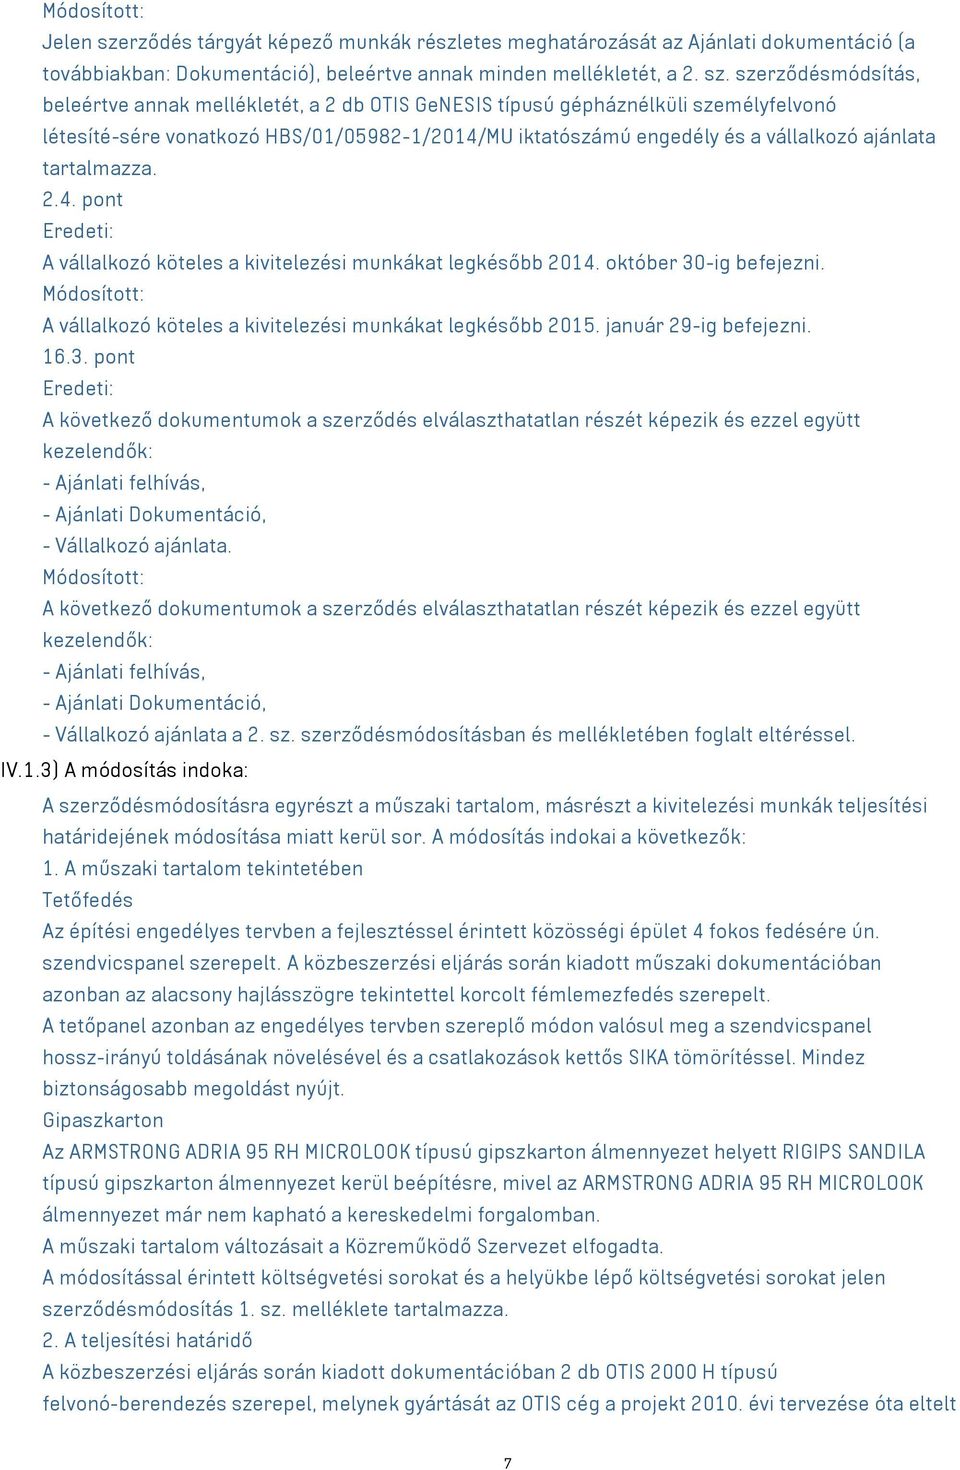 szerződésmódsítás, beleértve annak mellékletét, a 2 db OTIS GeNESIS típusú gépháznélküli személyfelvonó létesíté-sére vonatkozó HBS/01/05982-1/2014/MU iktatószámú engedély és a vállalkozó ajánlata